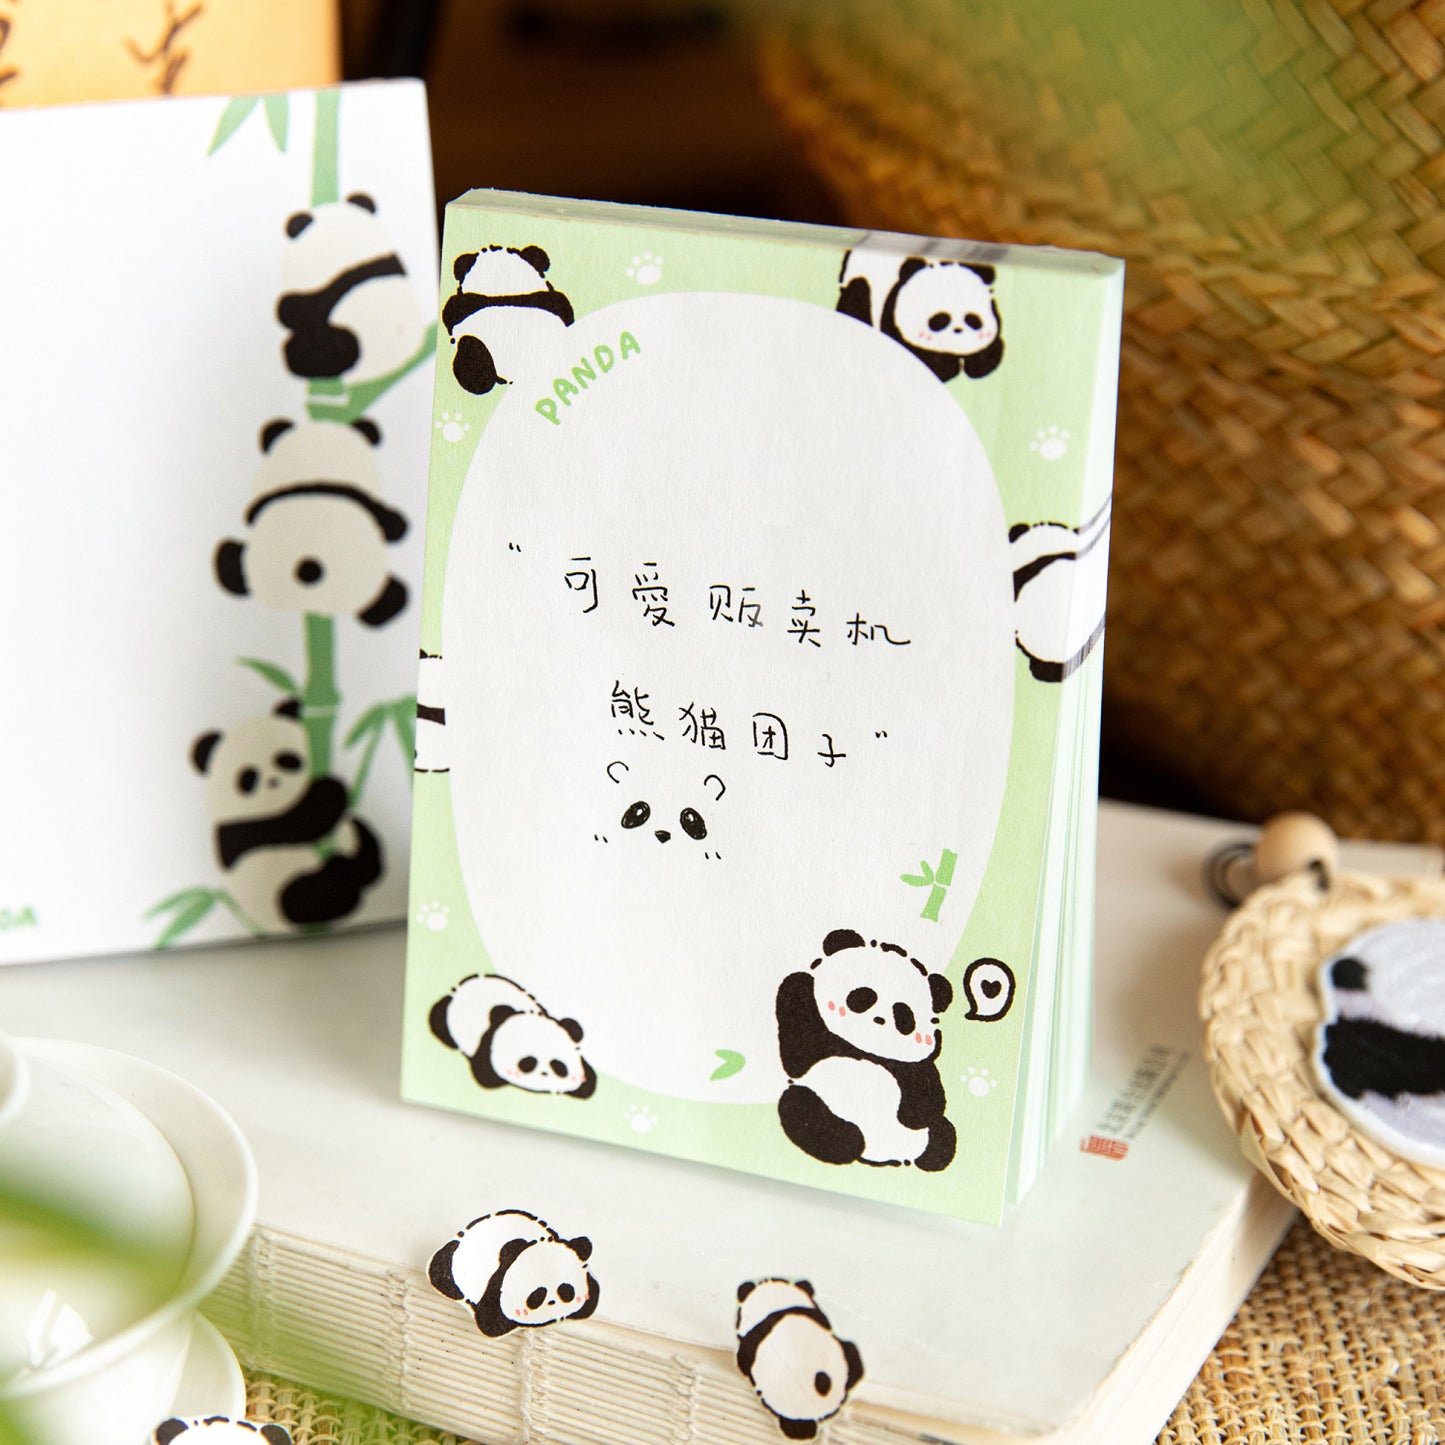 80 Pcs Panda Notepad YGGPD